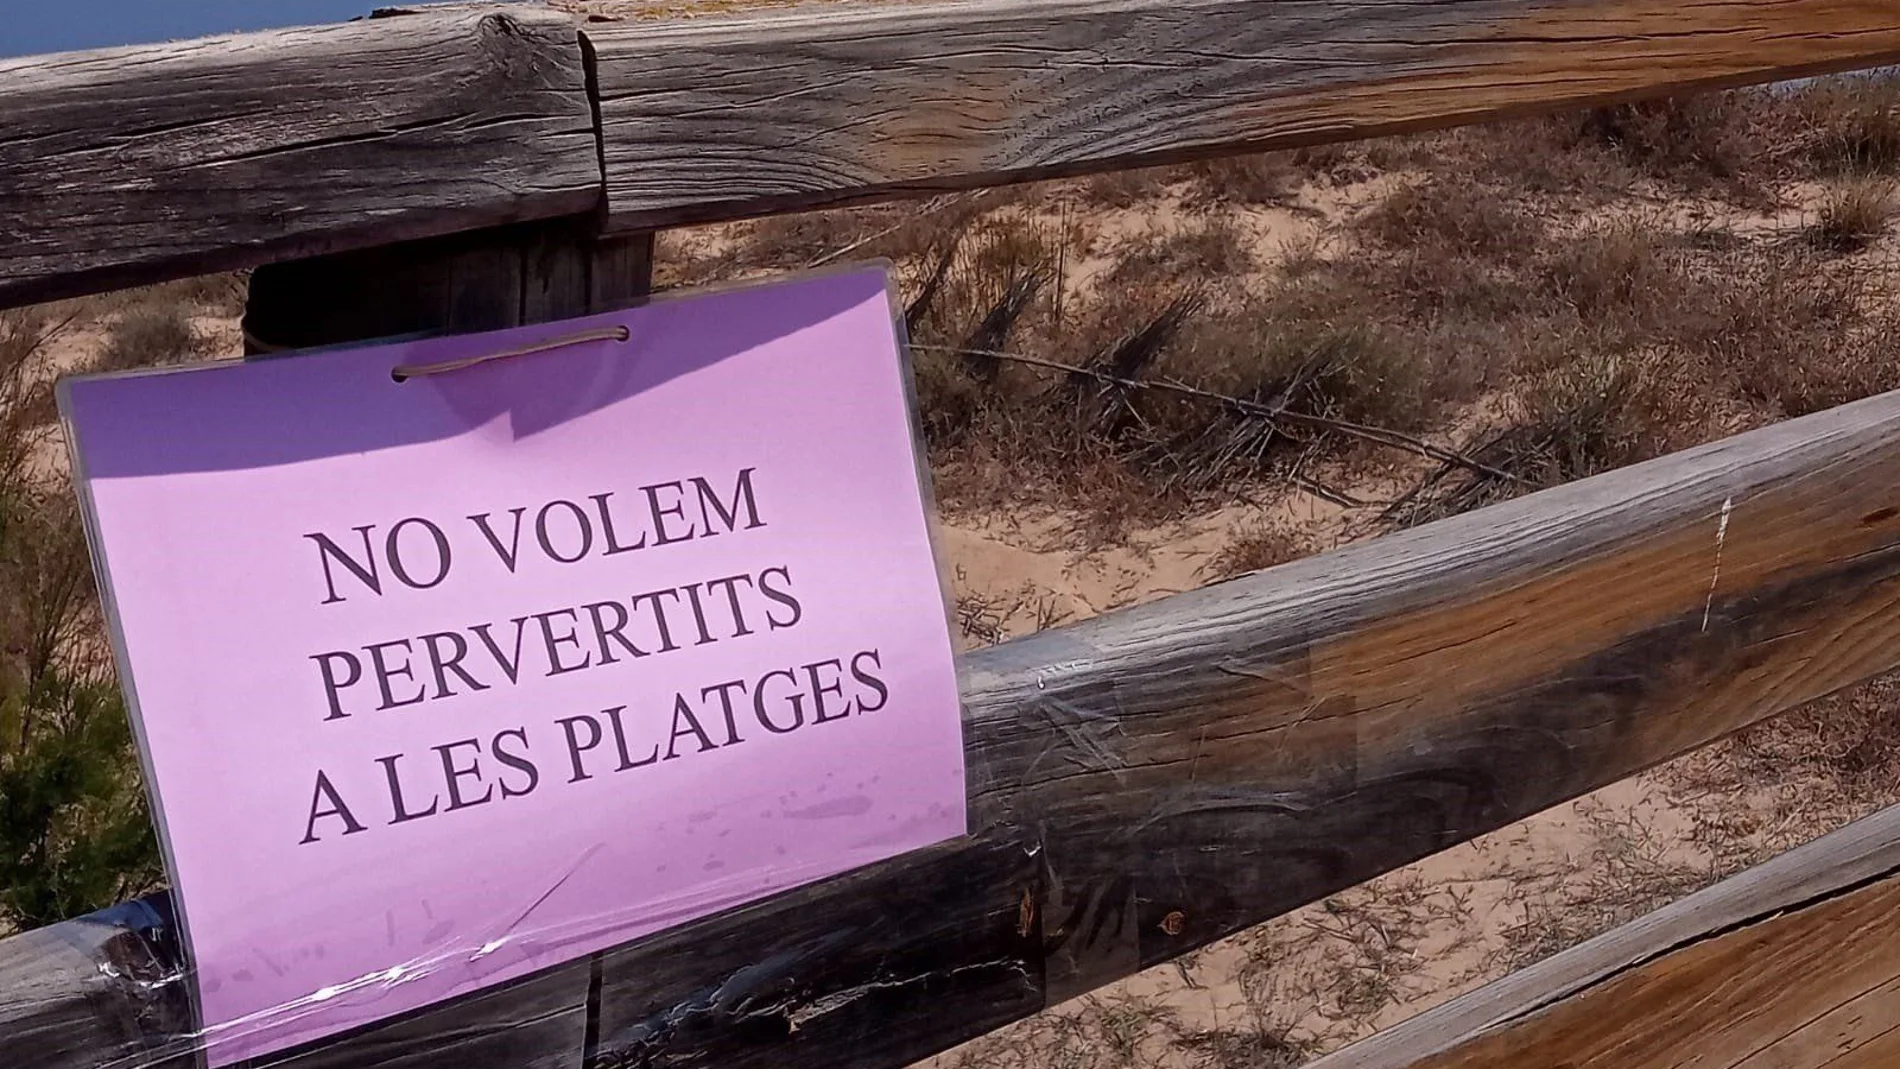 Tras la agresión a la mujer en la playa de Cullera aparecieron carteles como el que muestra la foto